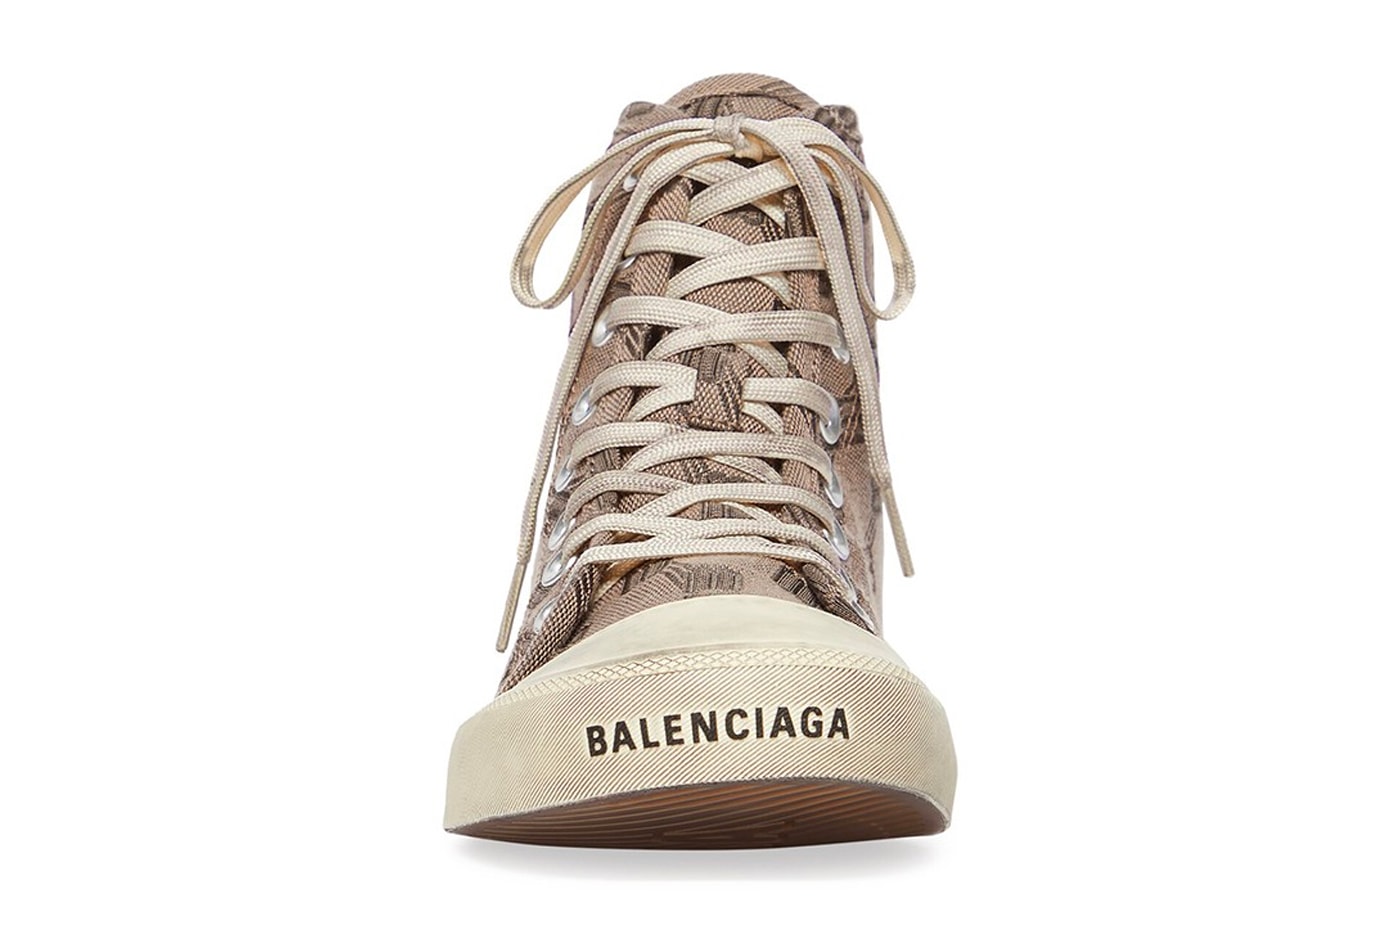 Balenciaga Paris Sneaker High Top BB Monogram Motif Pre Order Release Information Demna Gvasalia Destroyed 